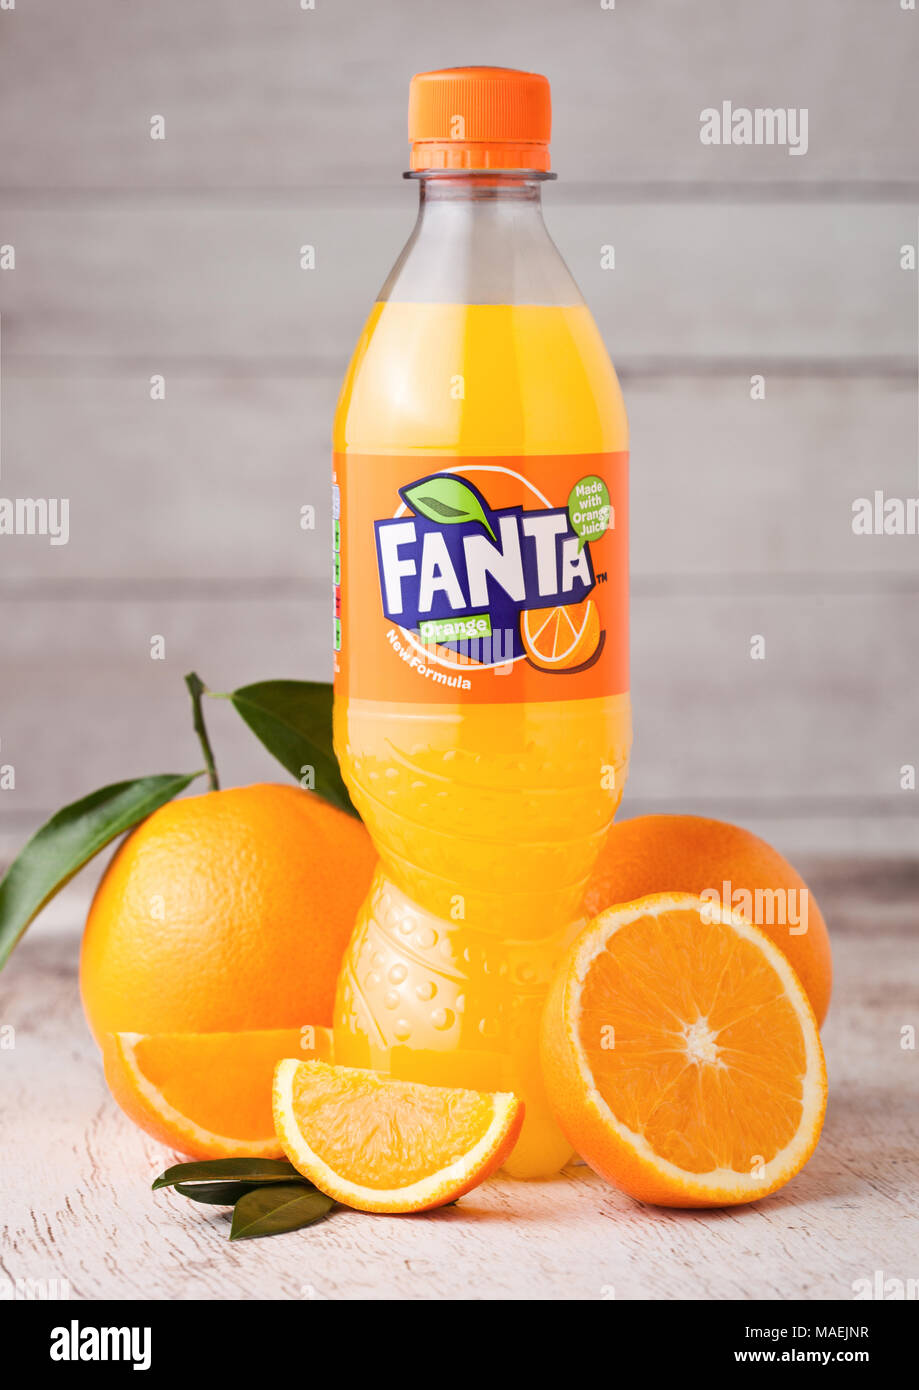 Generel Blive skør log LONDON, UK - MARCH 31, 2018: Plastic bottle of Fanta orange soft drink on  light wooden background with fresh raw oranges Stock Photo - Alamy